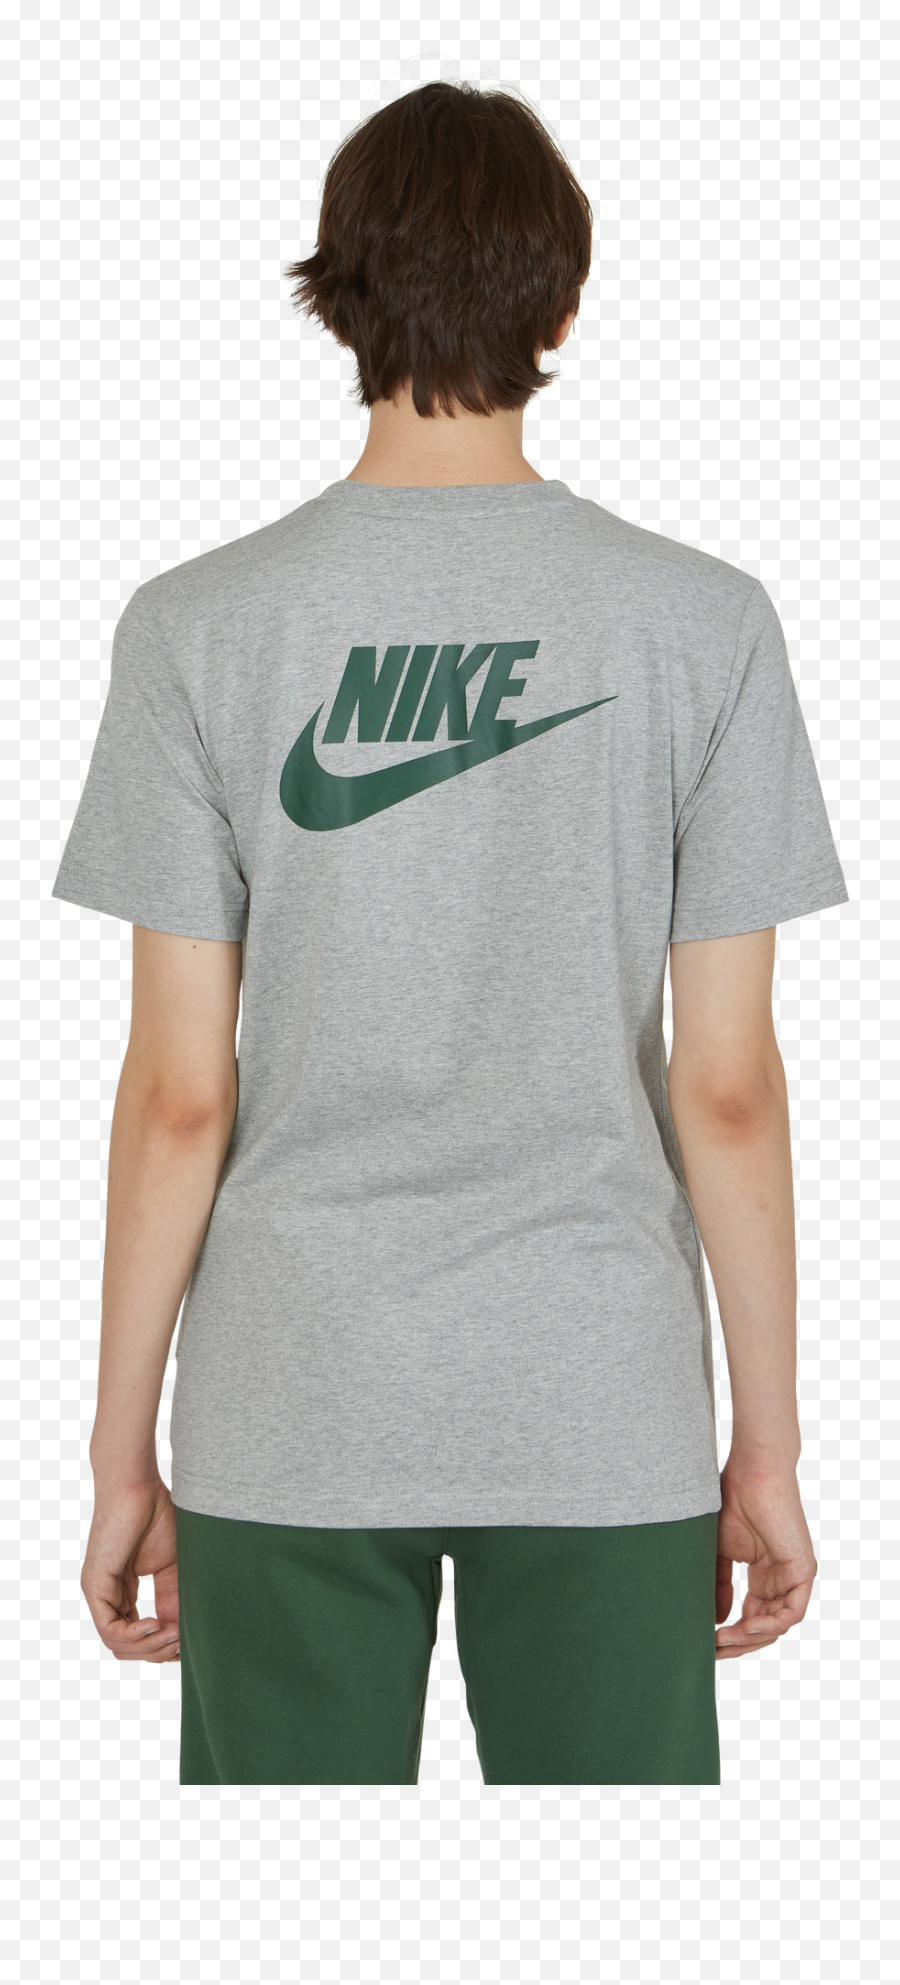 Stranger Things T - Shirt Nike Air Png,Stranger Things Logo Png